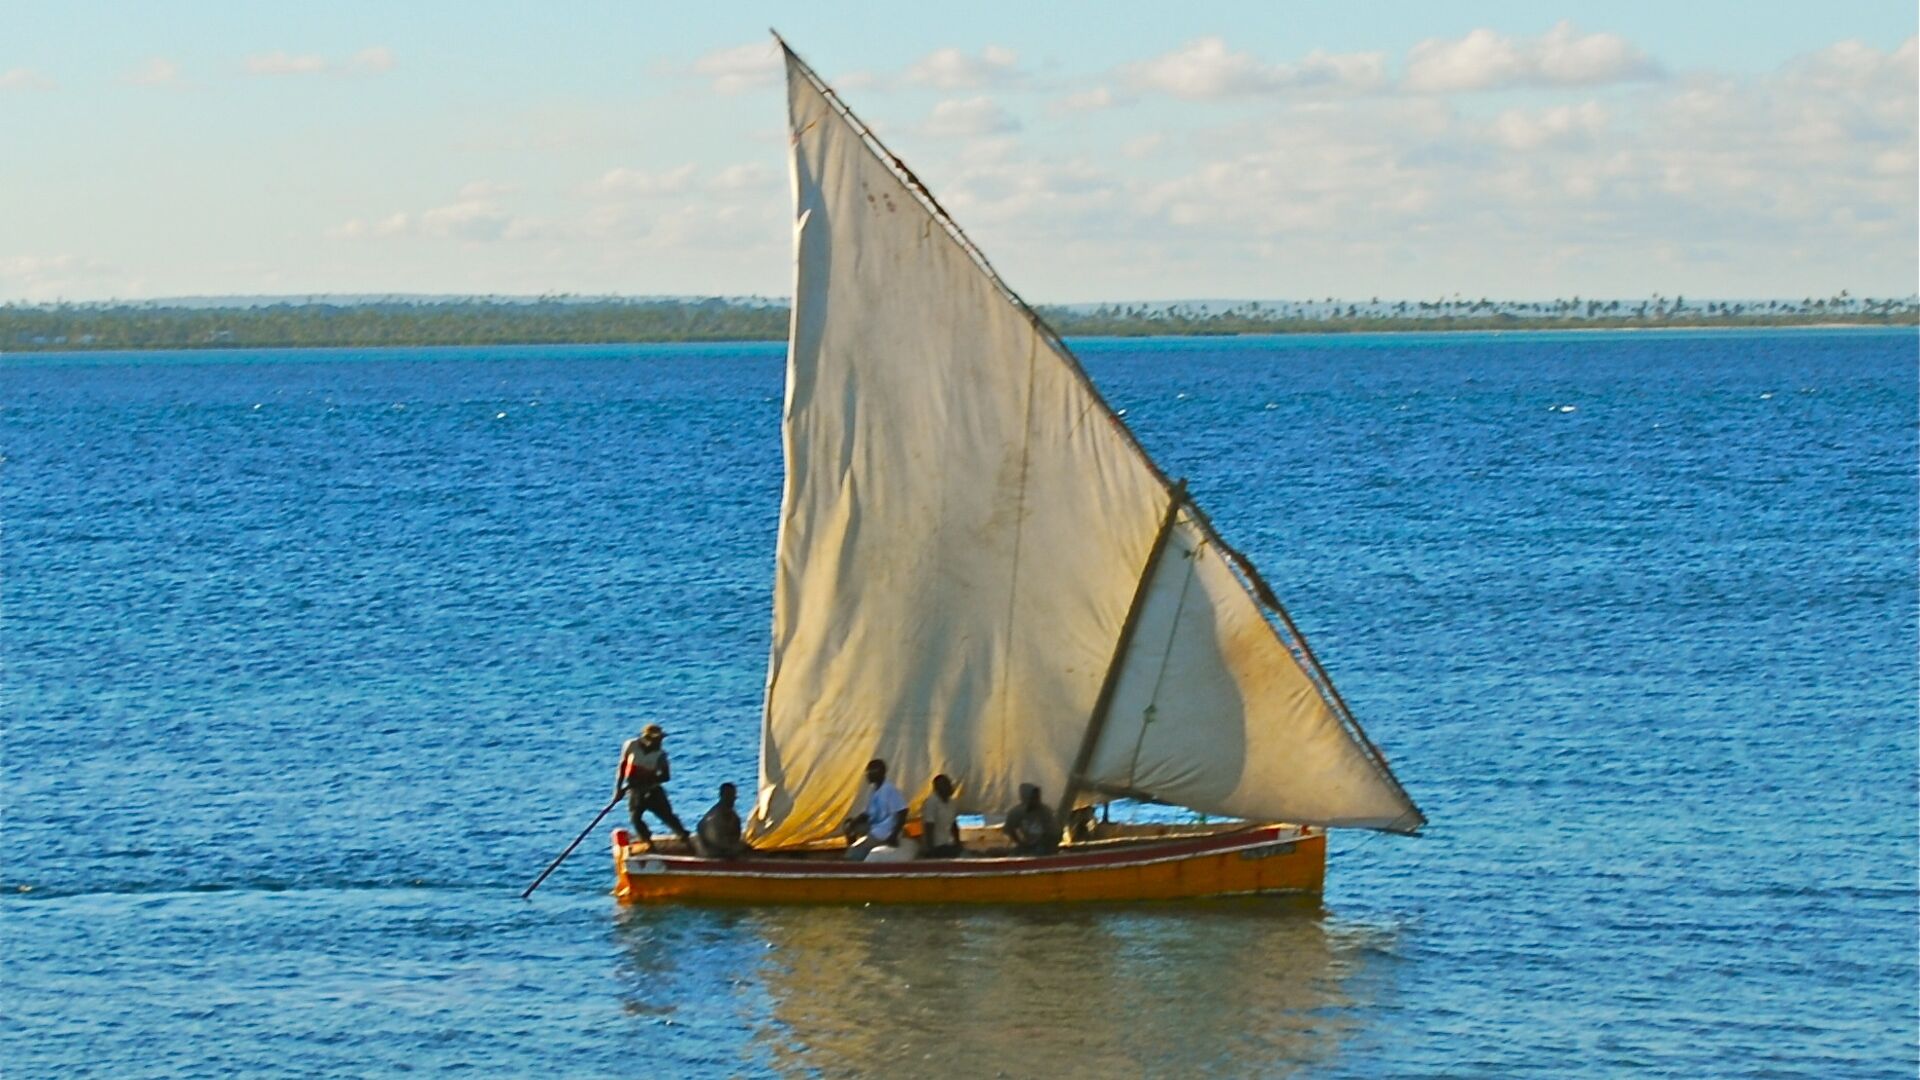 Pacea albastră: dhow-ul este o barcă tipică din Mozambic, o națiune foarte activă în protecția apei